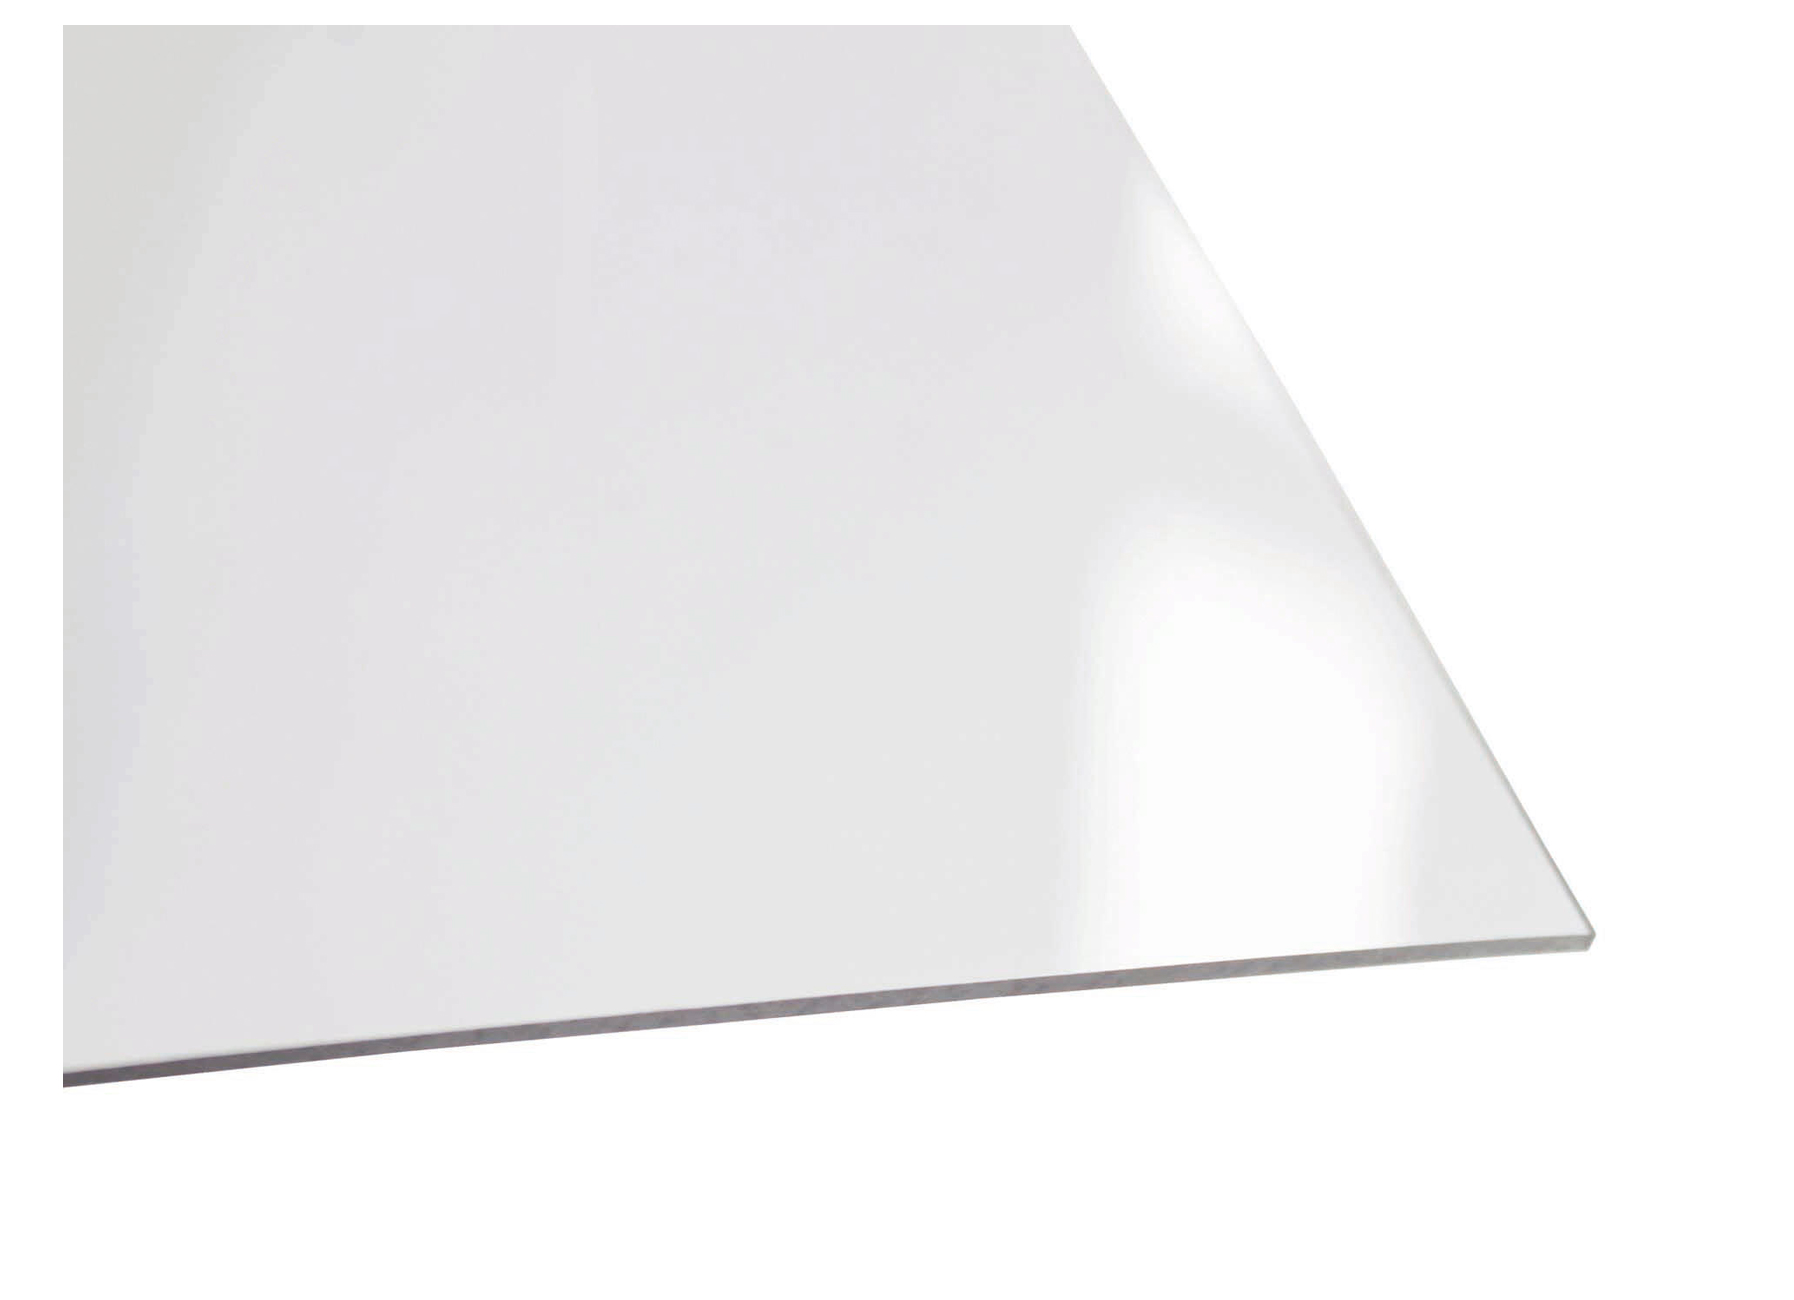 Plaque polystyrène 2.5 mm transparente lisse L.200 x 100 cm